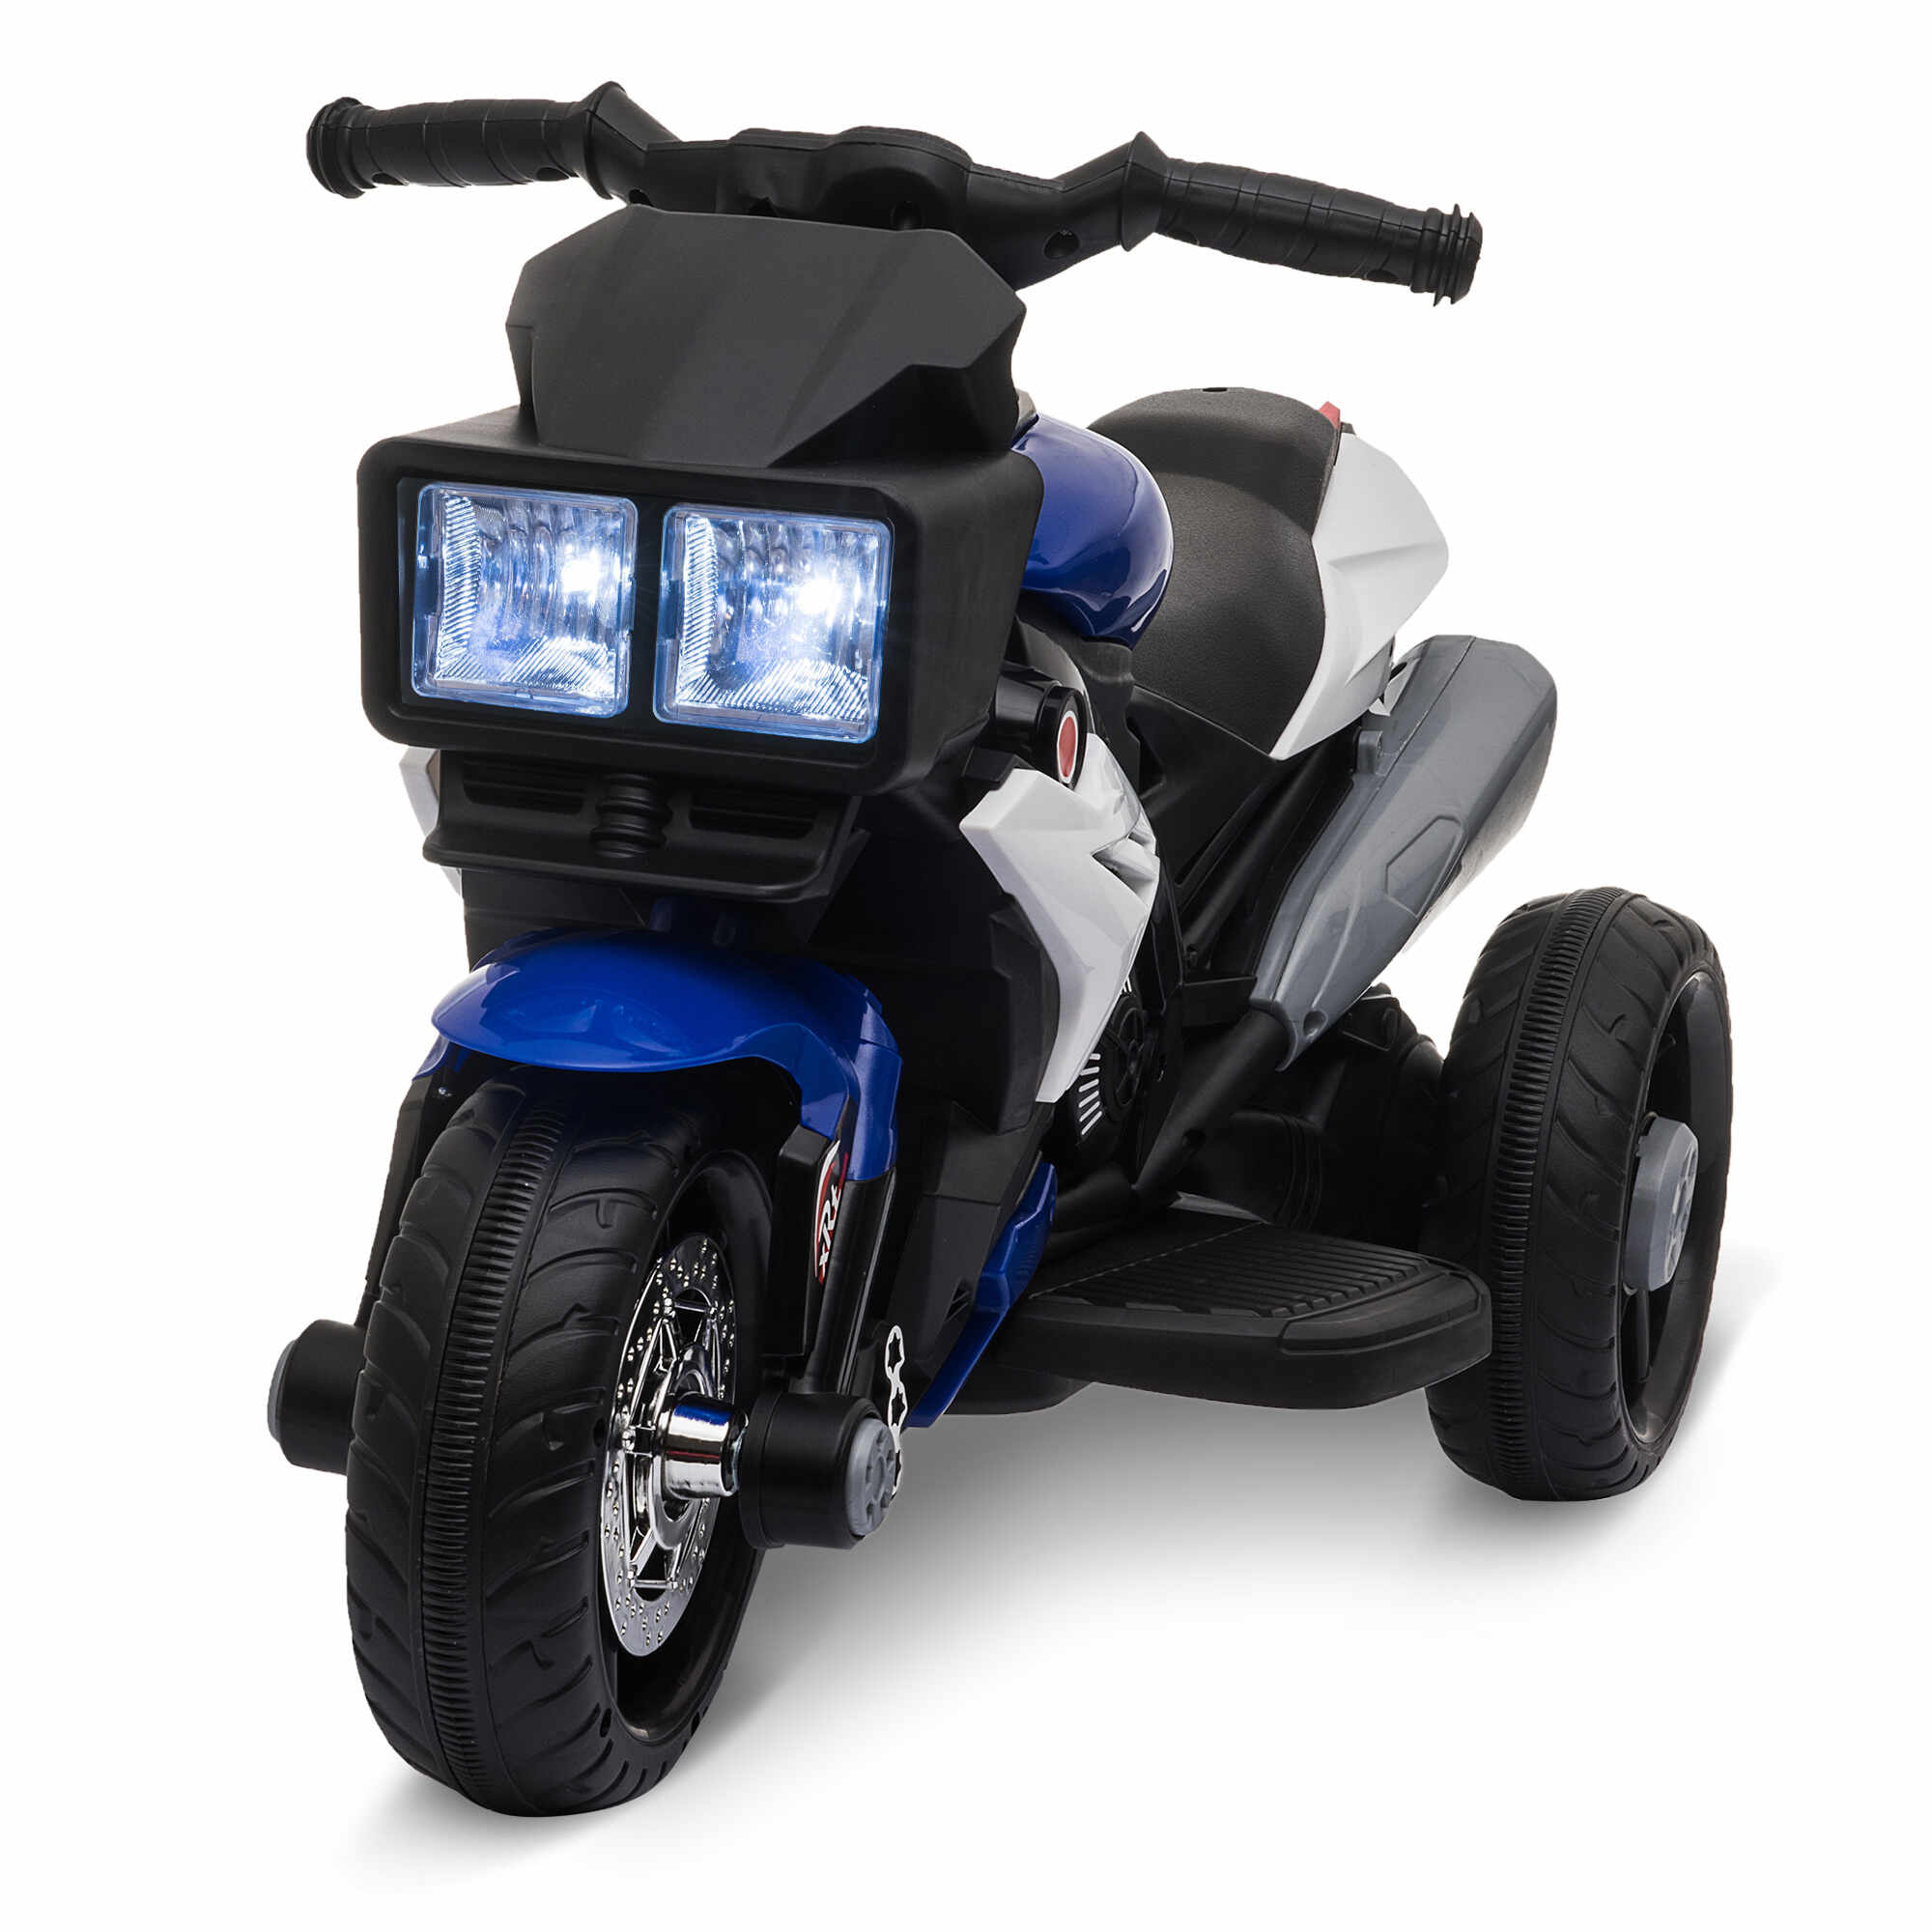 HOMCOM Motocicleta Electrica pentru Copii 3-6 ani (max. 25 kg) cu 3 Roti, Lumini si Sunete, Baterie 6V, Albastru inchis si Negru, 86x42x52cm